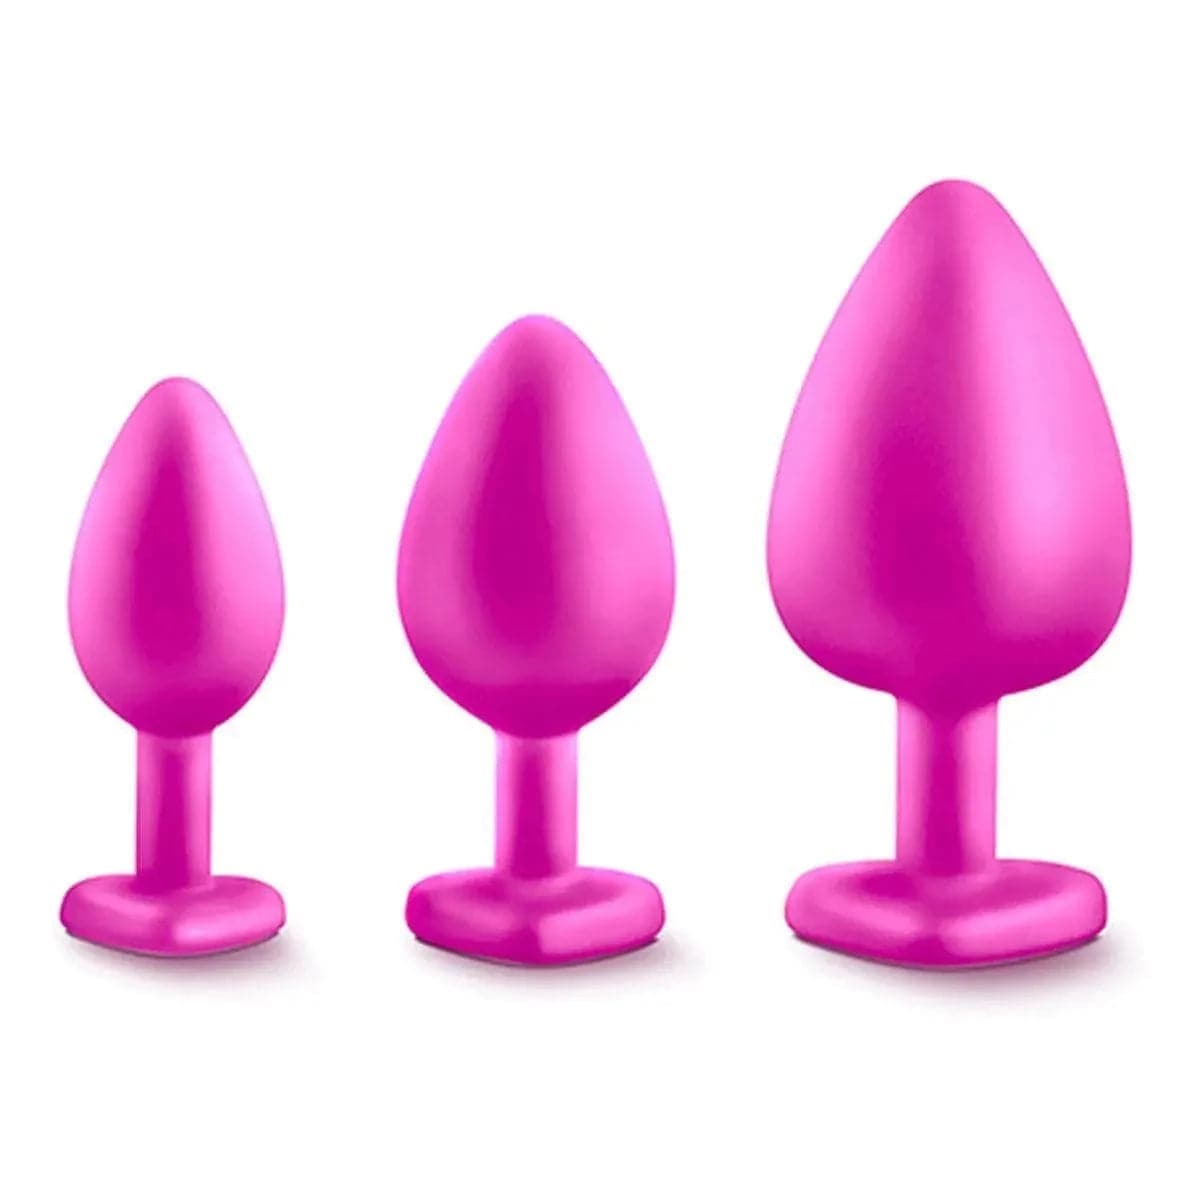 Luxe Conjunto Plugs Anais Bling Training Rosa, 7cm a 9.5cm, Ø2.6cm a Ø4.4cm - Pérola SexShop